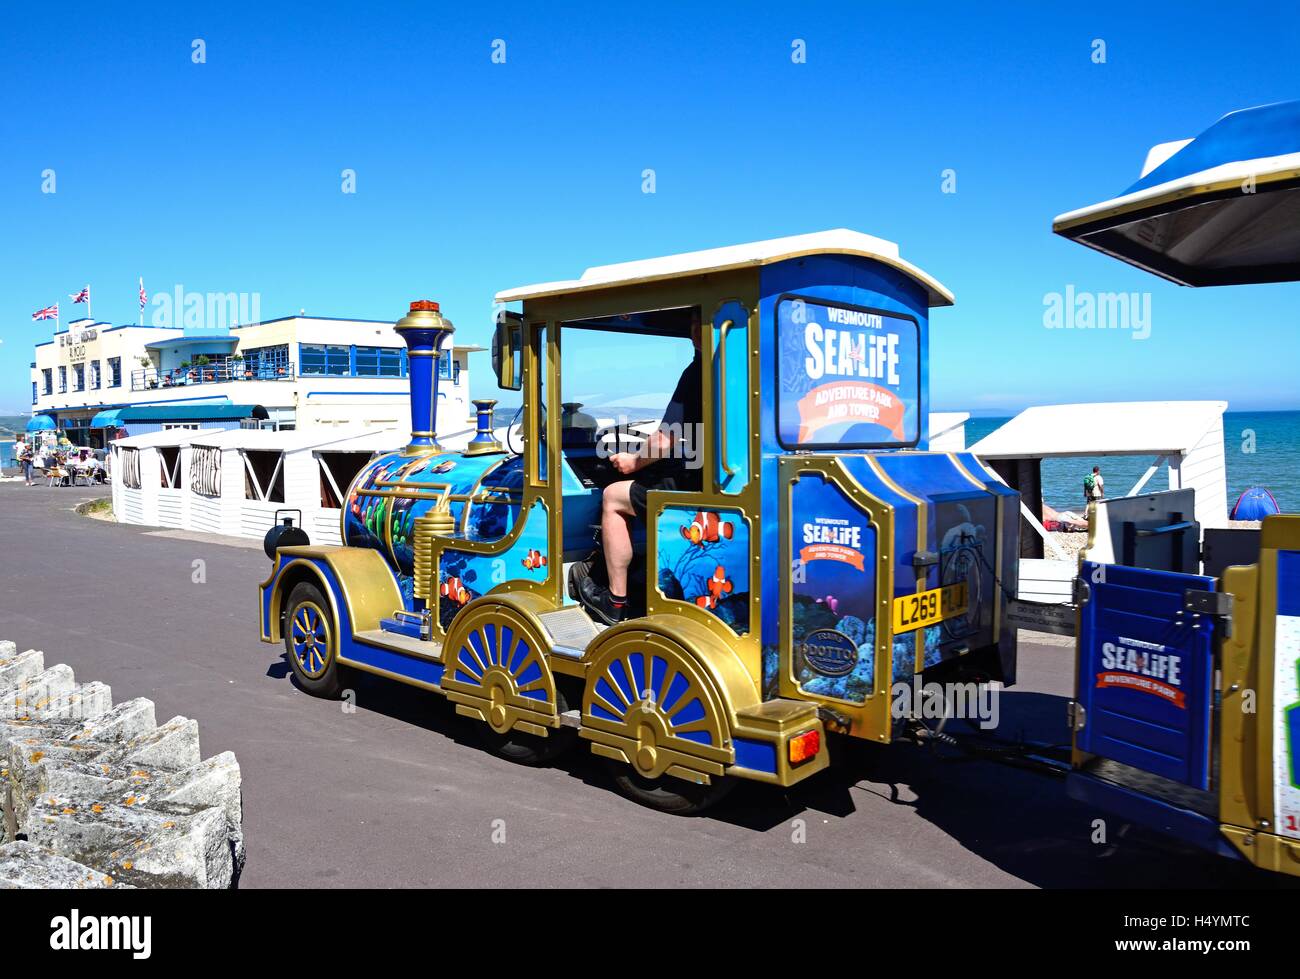 Train touristique en direction de la jetée Kiosque le long de l'Esplanade, Weymouth, Dorset, Angleterre, Royaume-Uni, Europe de l'Ouest. Banque D'Images